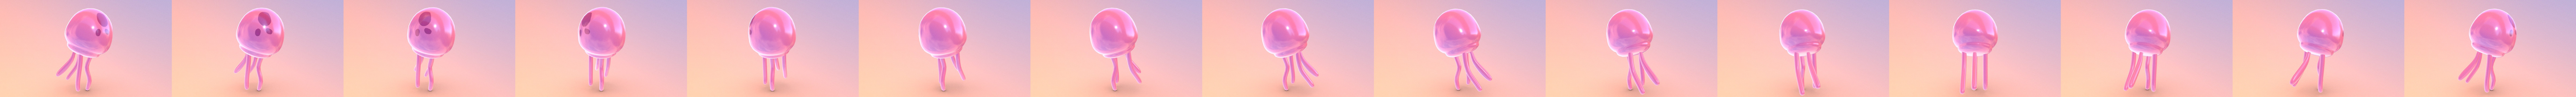 SpongeBob Jellyfish MOD by jajaum3d, Download free STL model